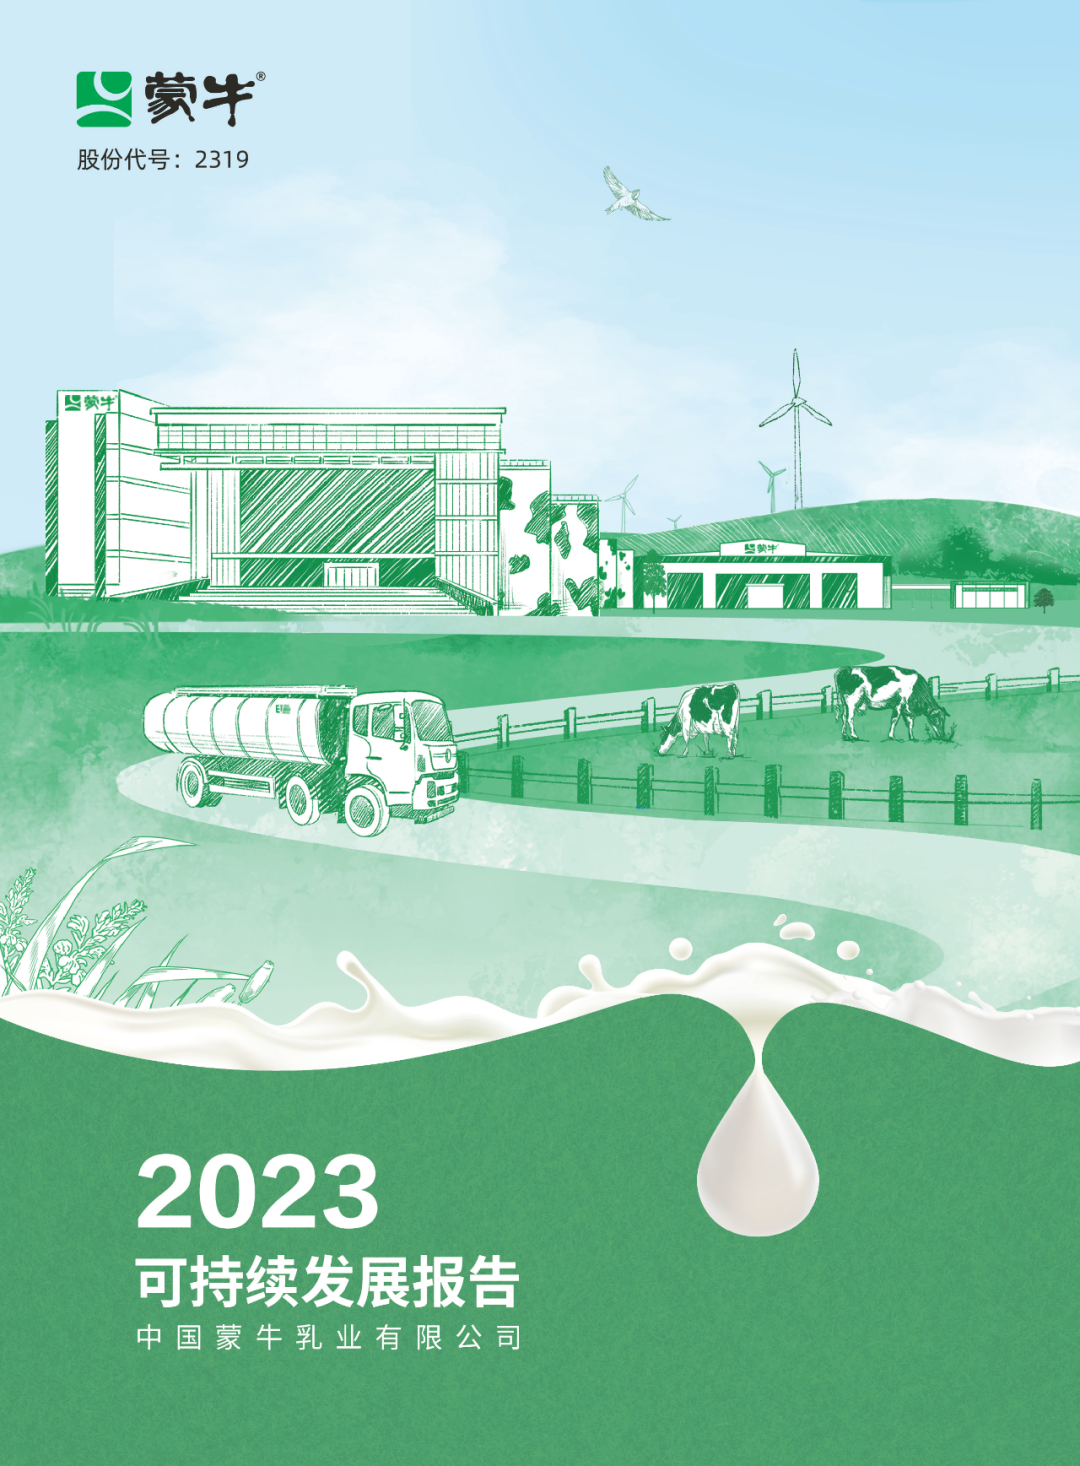 蒙牛发布2023年可持续发展报告，以 GREEN战略领航乳业高质量发展